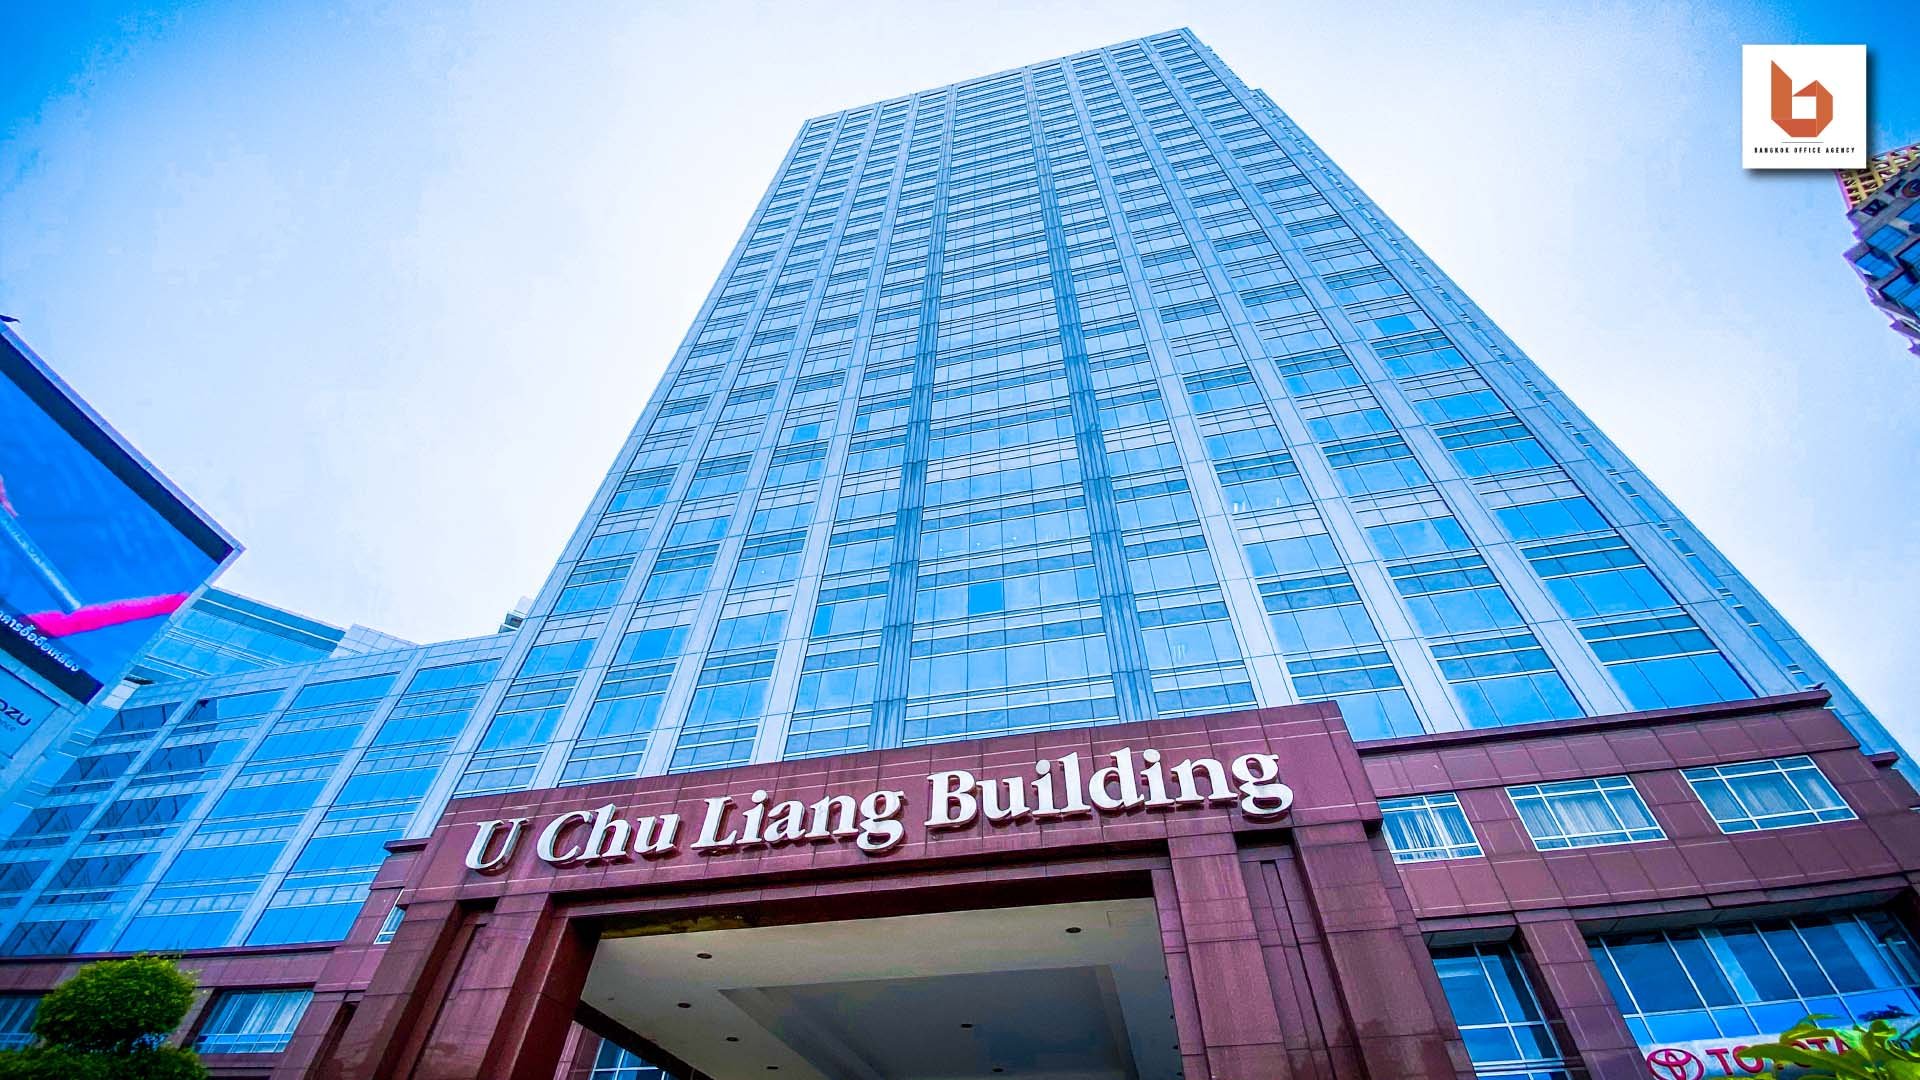 U CHU LIANG Building